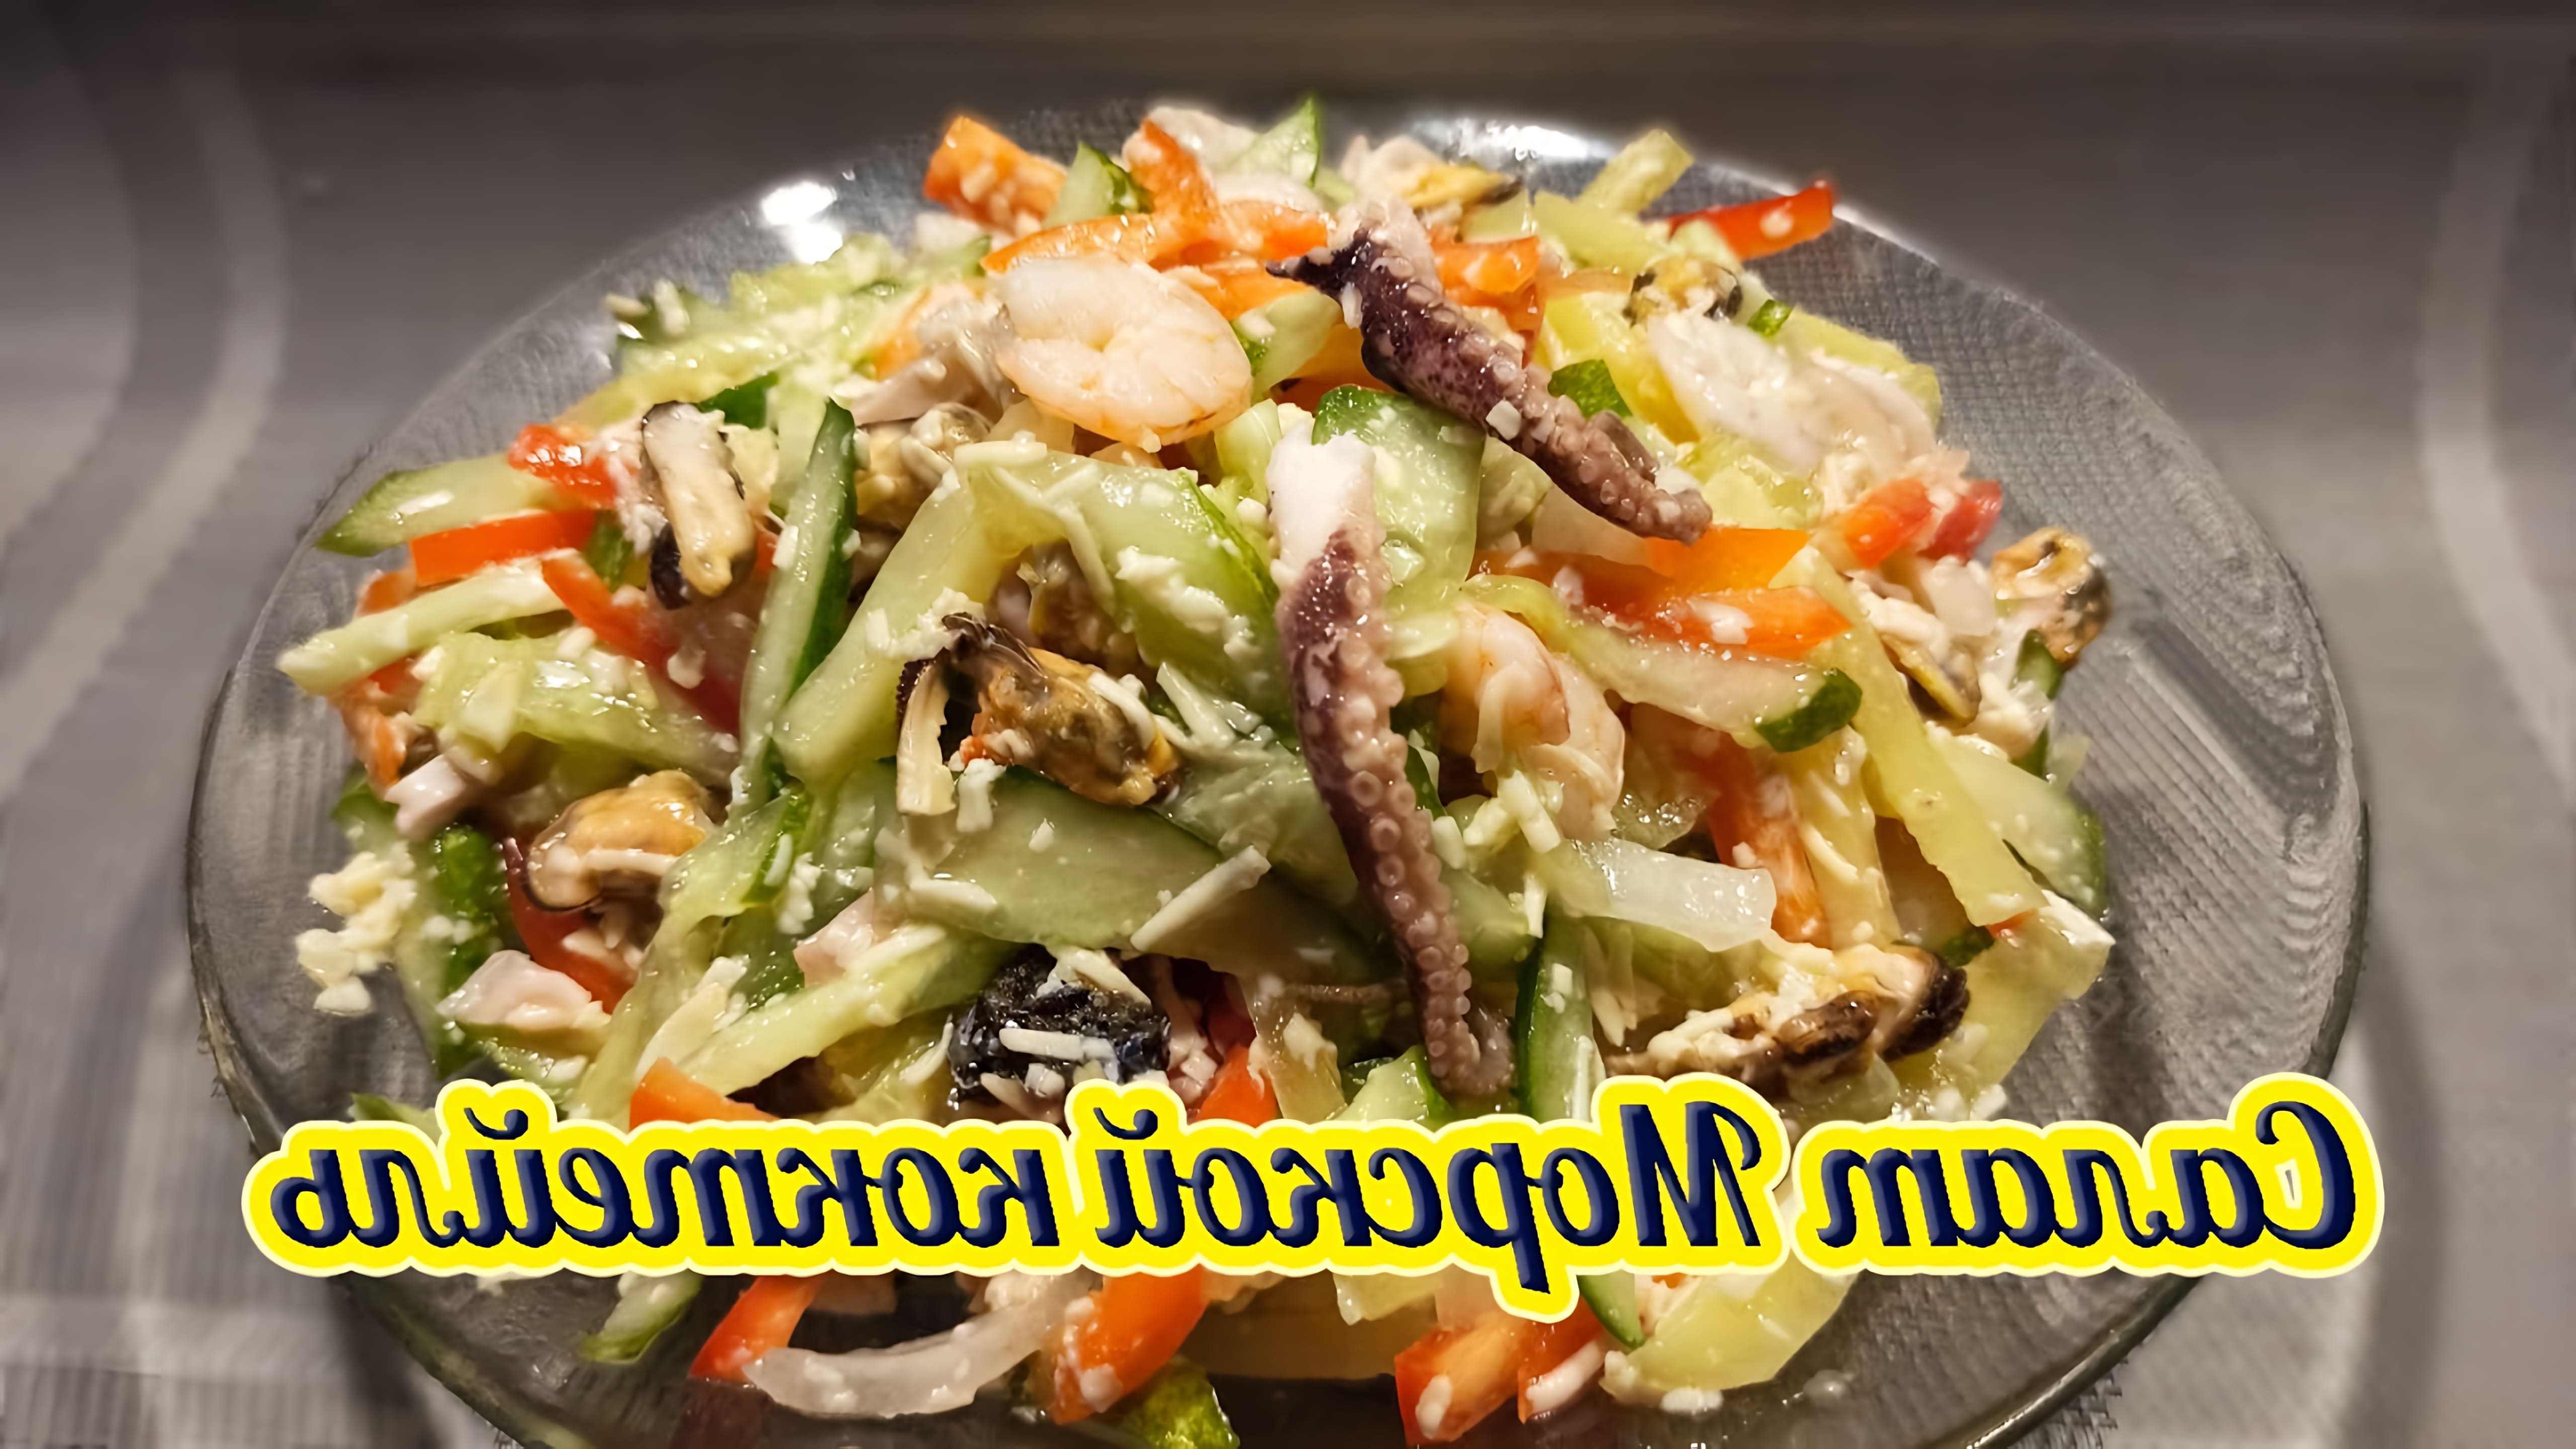 В этом видео-ролике вы увидите, как приготовить вкусный и полезный салат "Морской коктейль" по рецепту правильного питания